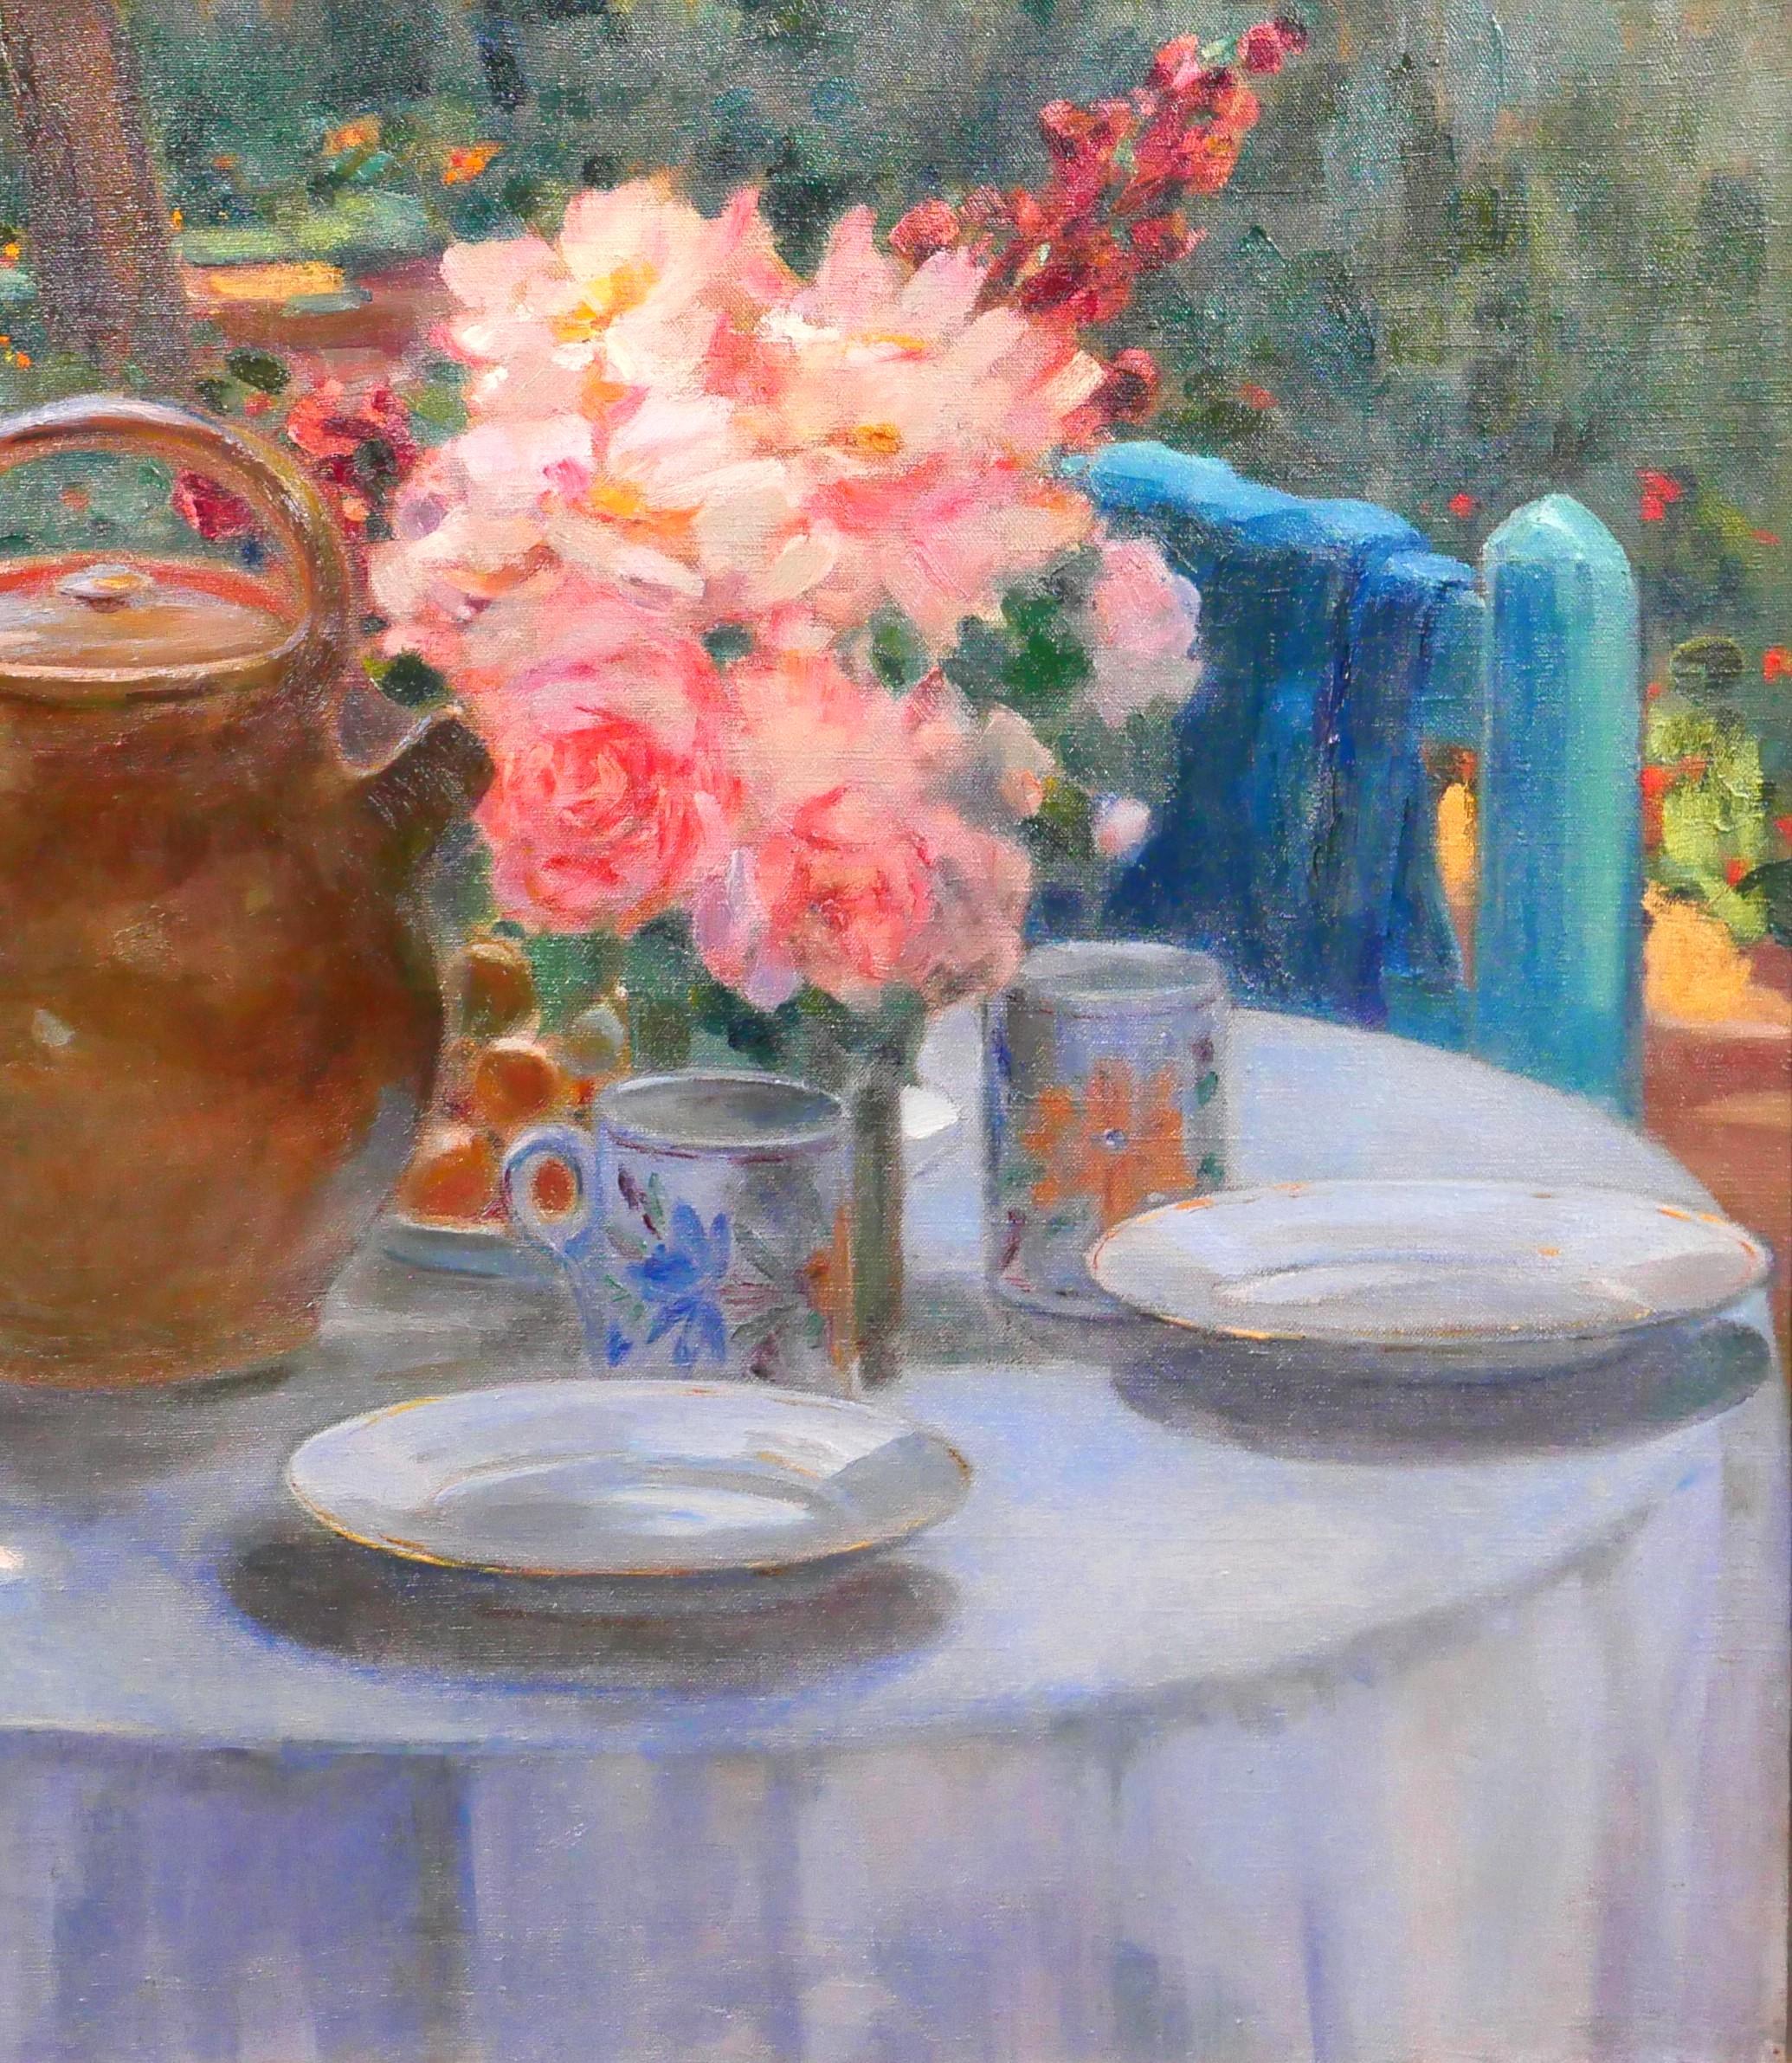 Louise ALIX
1888-1980
Der Tisch im Garten, Blumen zur Teezeit
Gemälde, Öl auf Leinwand
Unterzeichnet
Gemälde: 73 x 60 cm (28,7 x 23,6 Zoll)
Moderner Rahmen aus natürlicher Eiche (amerikanische Kiste): 82,5 x 69,5 cm (32,5 x 27,4 Zoll)
Rückseite,